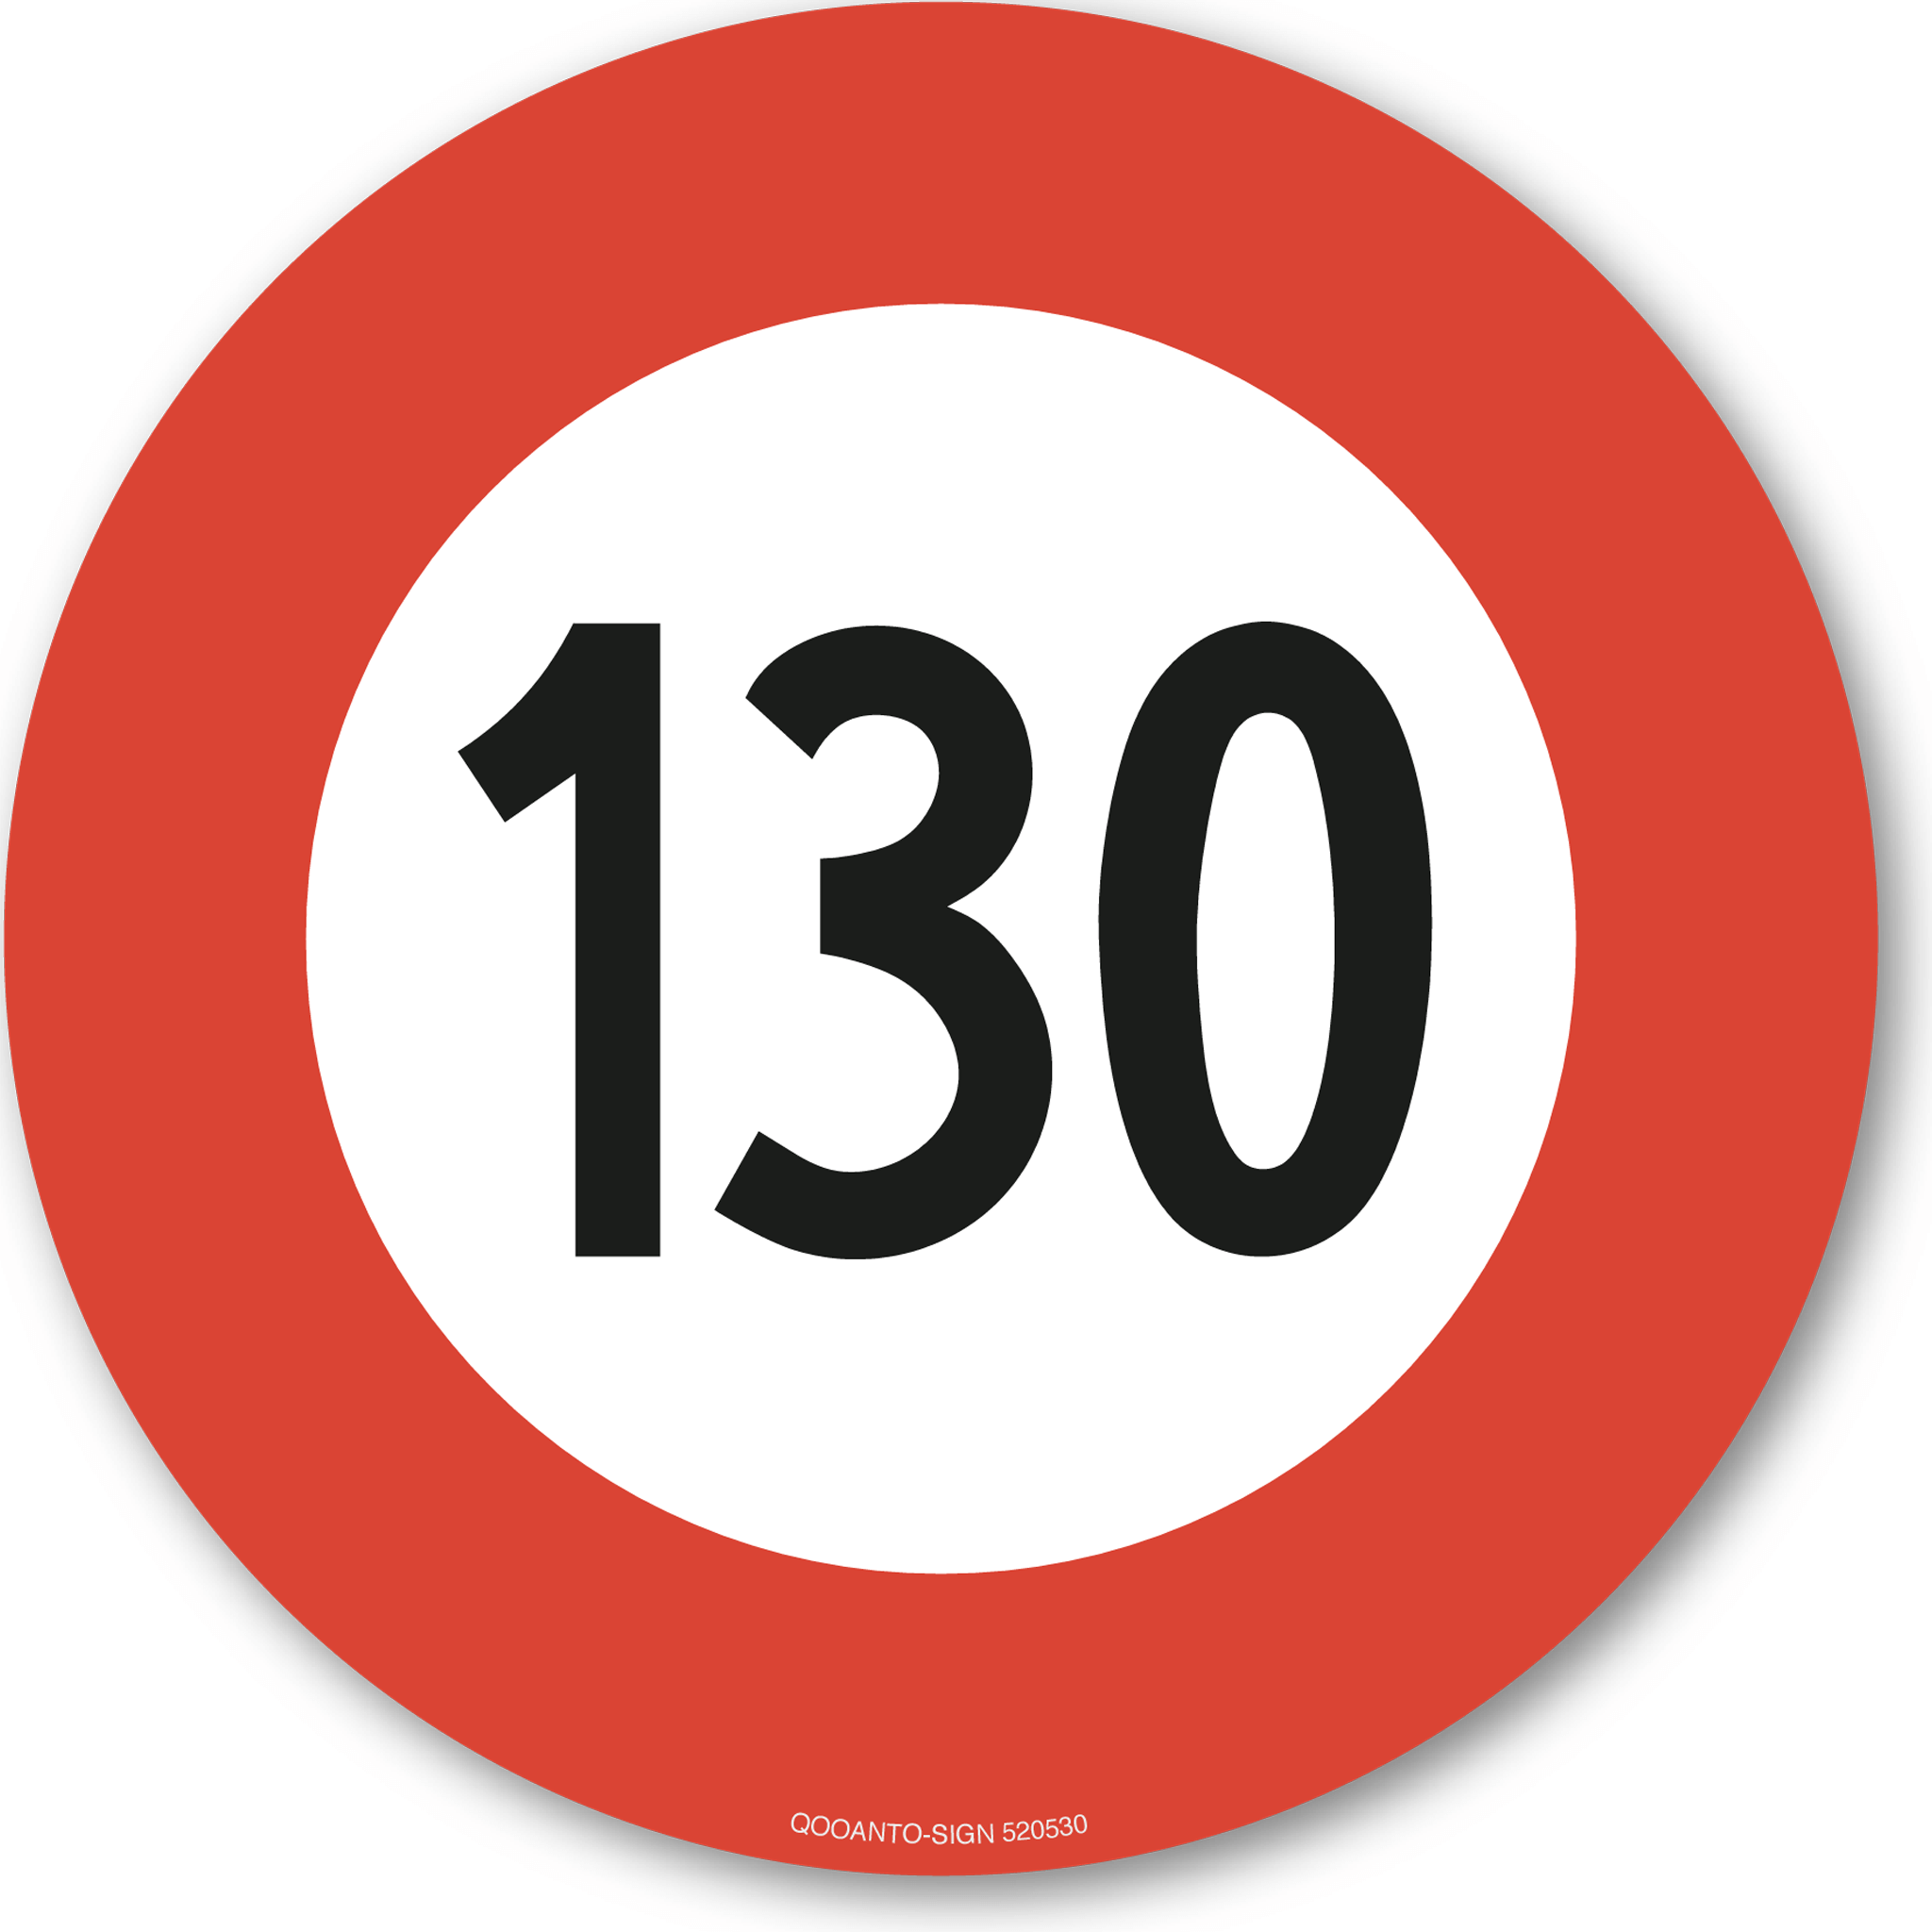 Höchstgeschwindigkeit - 130, Schild oder Aufkleber